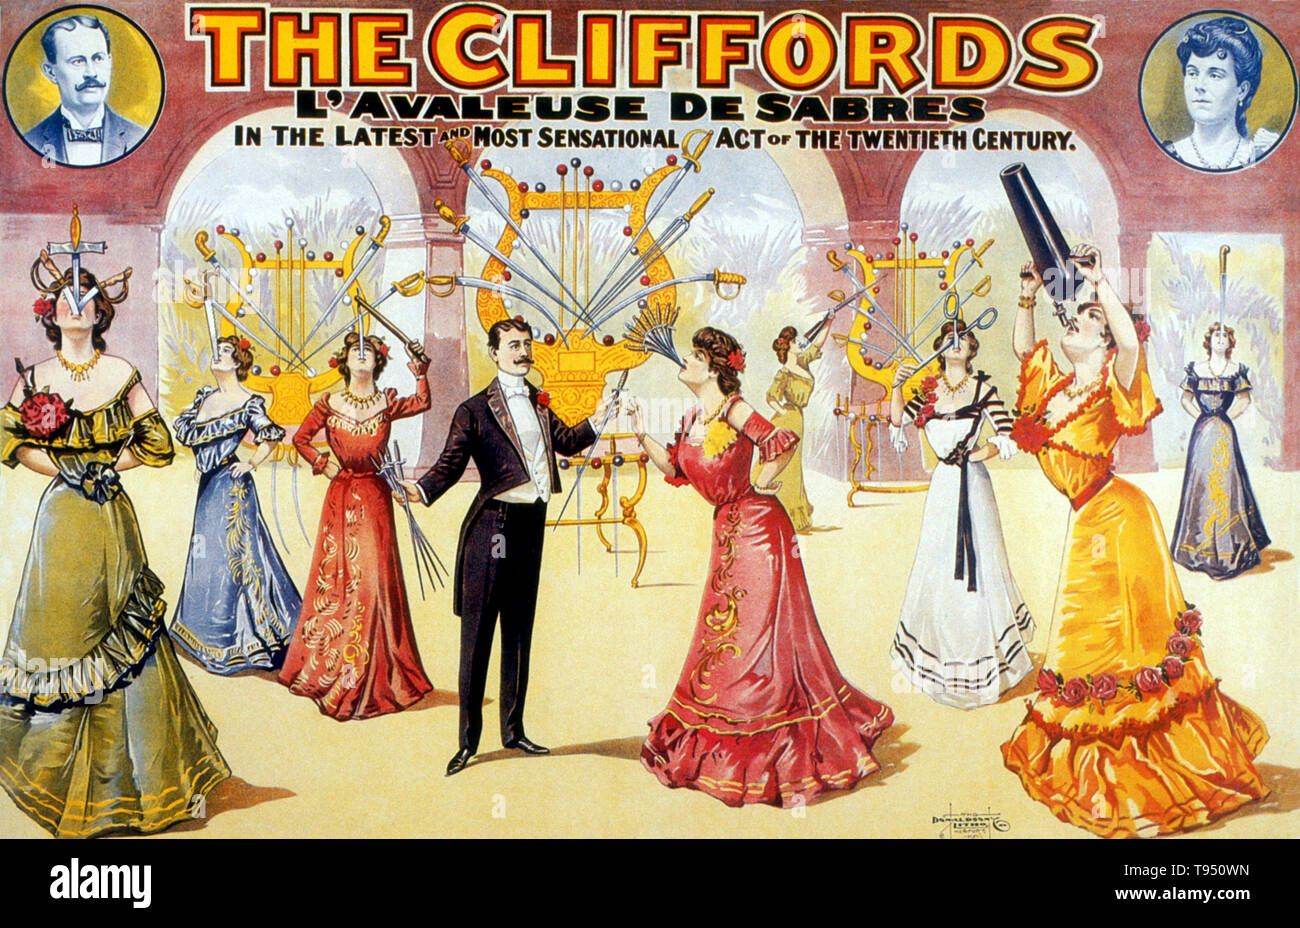 Edith Clifford (1886 - 1942) begann ihre Karriere im Jahr 1899, nachdem er von der Veteran eine ausgebildet werden - legged Sword swallower Deln Ritz. Sie debütierte mit einem der Ringling Brothers' Touring zeigt im Alter von 13 Jahren. Ihr Handeln ändern würde und über die Jahre weiterentwickelt, aber es kam schließlich schlucken, Rasierklingen, Scheren, Bajonette, gekrümmten Schaufeln, und bis zu 13 Schwerter auf einmal, mit Blades bis zu 26 cm lang. Stockfoto